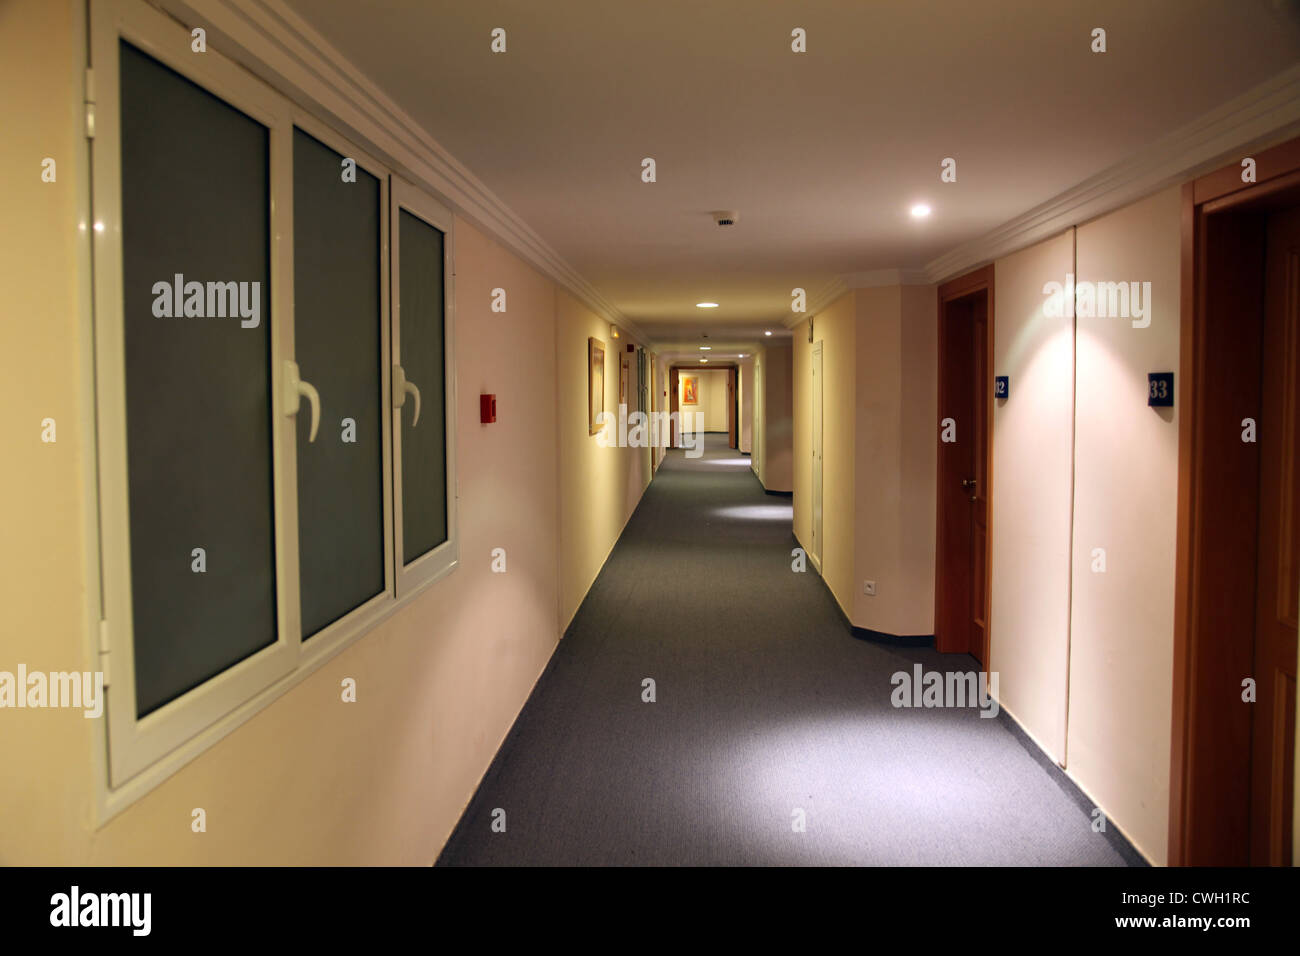 A long hotel corridor Stock Photo